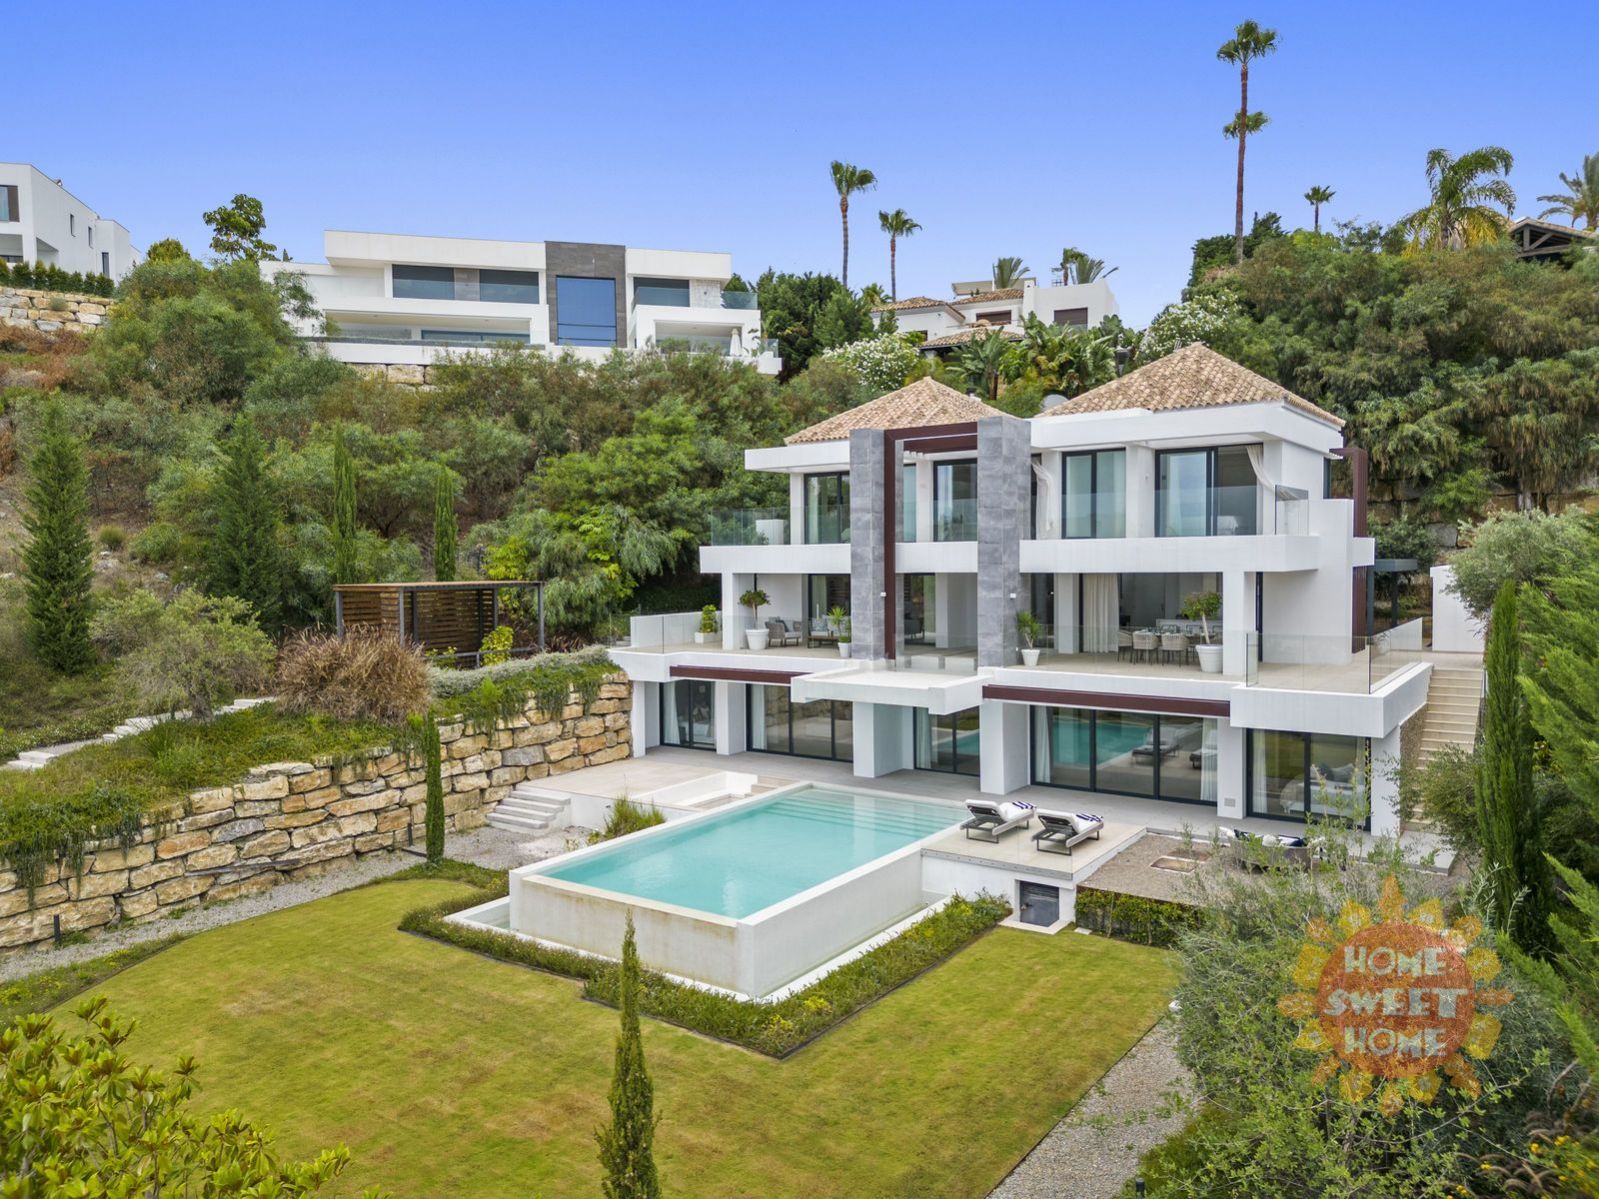 Španělsko - Marbella, luxusní vila 704 m2 + terasa 214 m2, výhled na moře, zahrada, bazén, obrázek č. 1